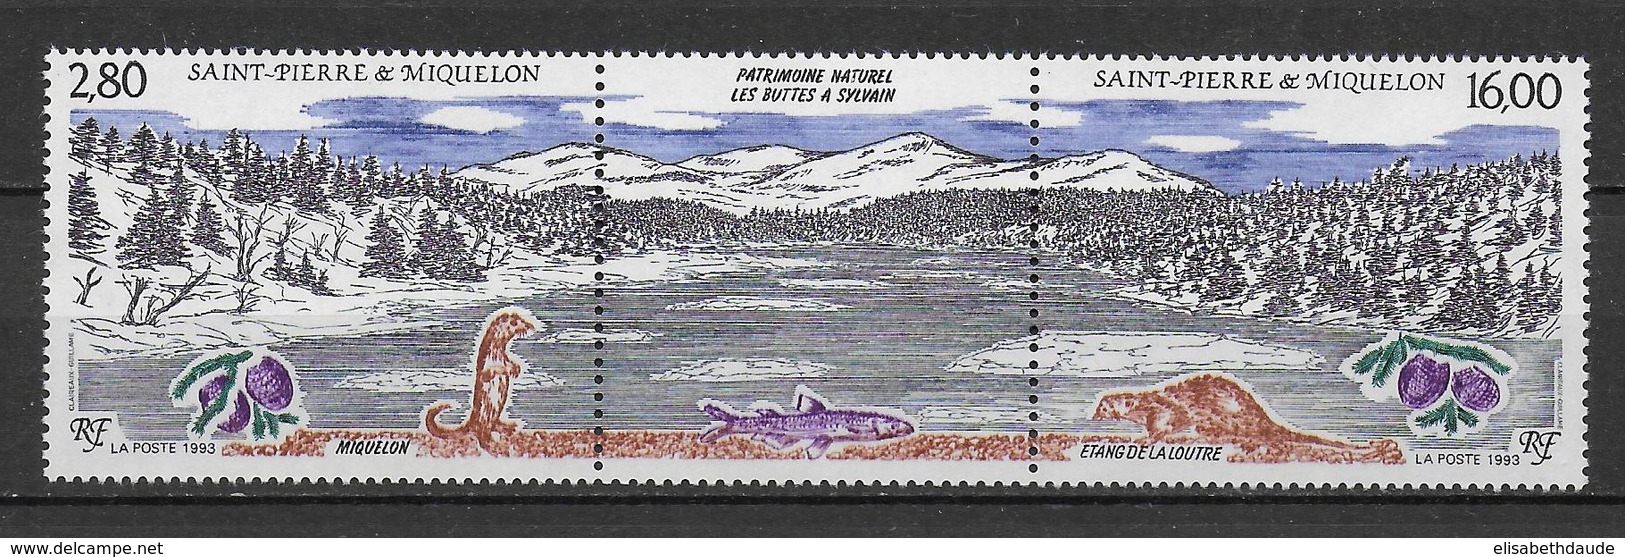 SPM - 1993 - LIVRAISON GRATUITE A PARTIR DE 5 EUR D'ACHAT - NATURE OISEAUX - TRIPTYQUE YVERT N°586A ** MNH - - Unused Stamps